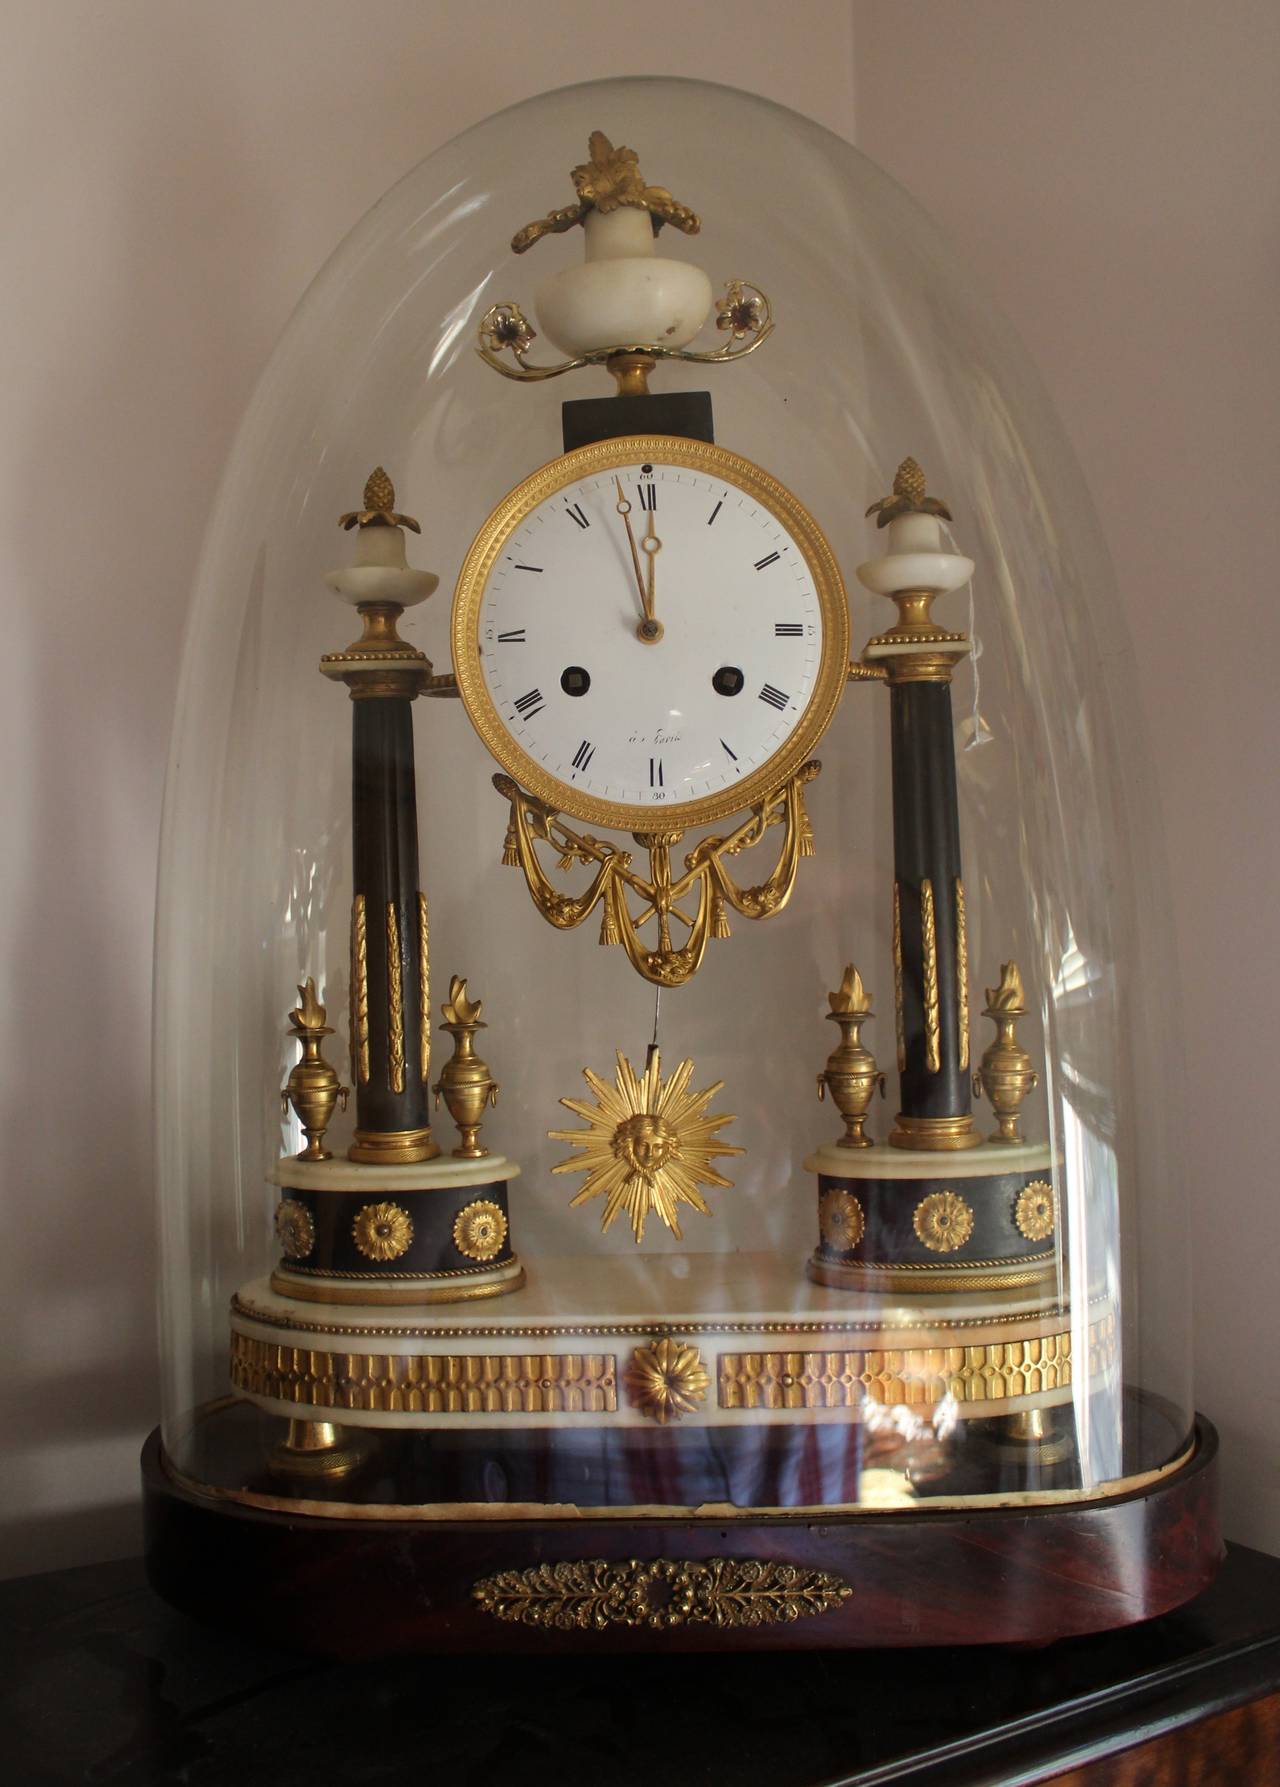 Französische Empire-Uhr aus dem frühen 19. Jahrhundert aus Marmor und Ormolu.

Französische Portikus-Uhr aus Carrara-Marmor mit umfangreichen Ormolu-Laubsägearbeiten, montiert auf zwei fein dekorierten Marmorsäulen, gekrönt von drei verzierten